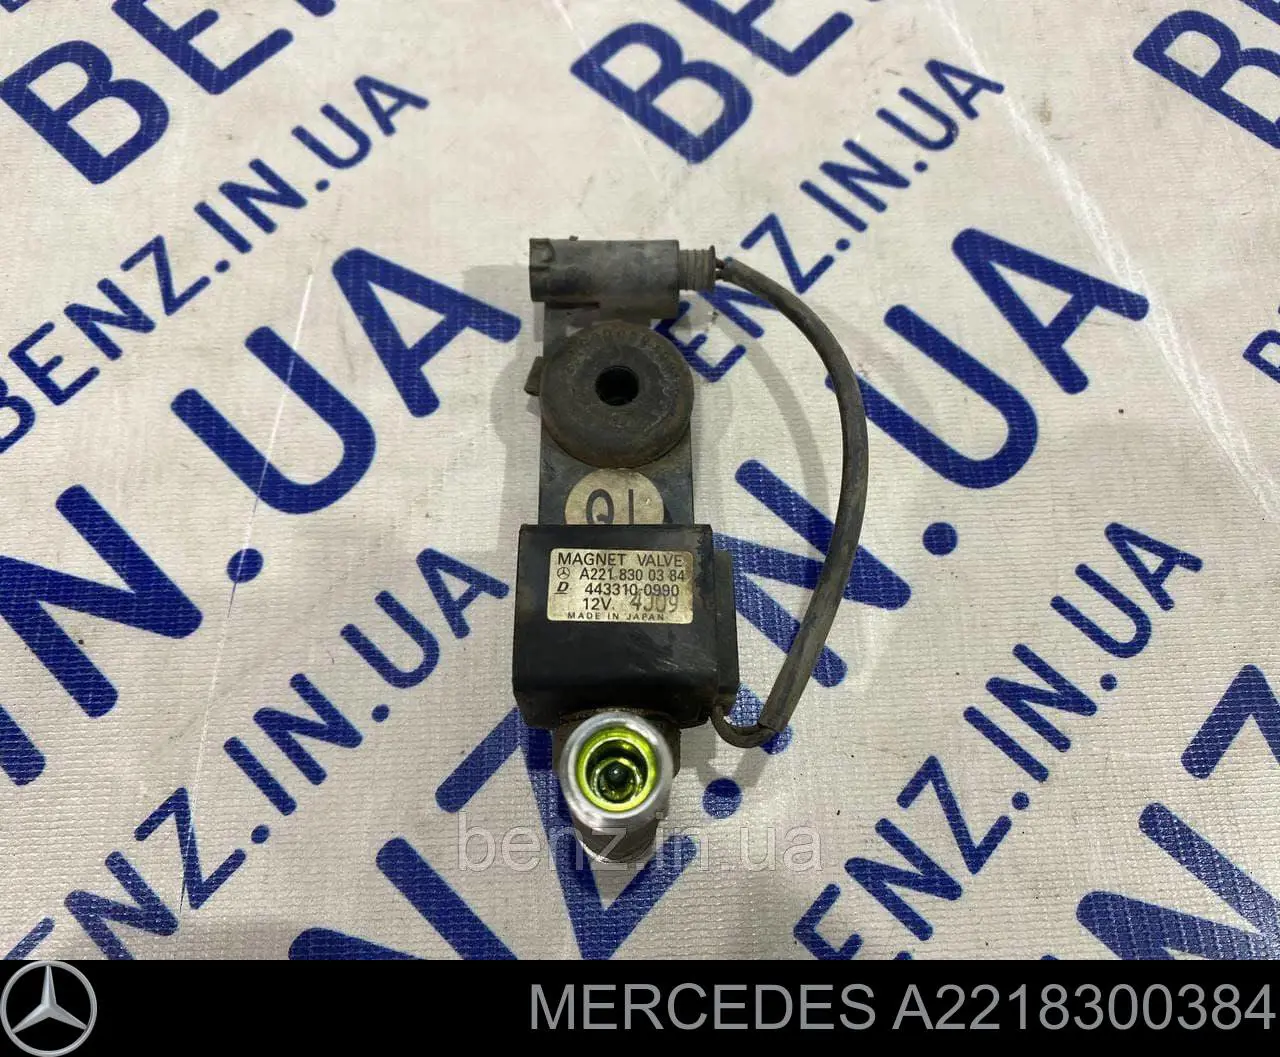 A2218300384 Mercedes válvula trv de aparelho de ar condicionado